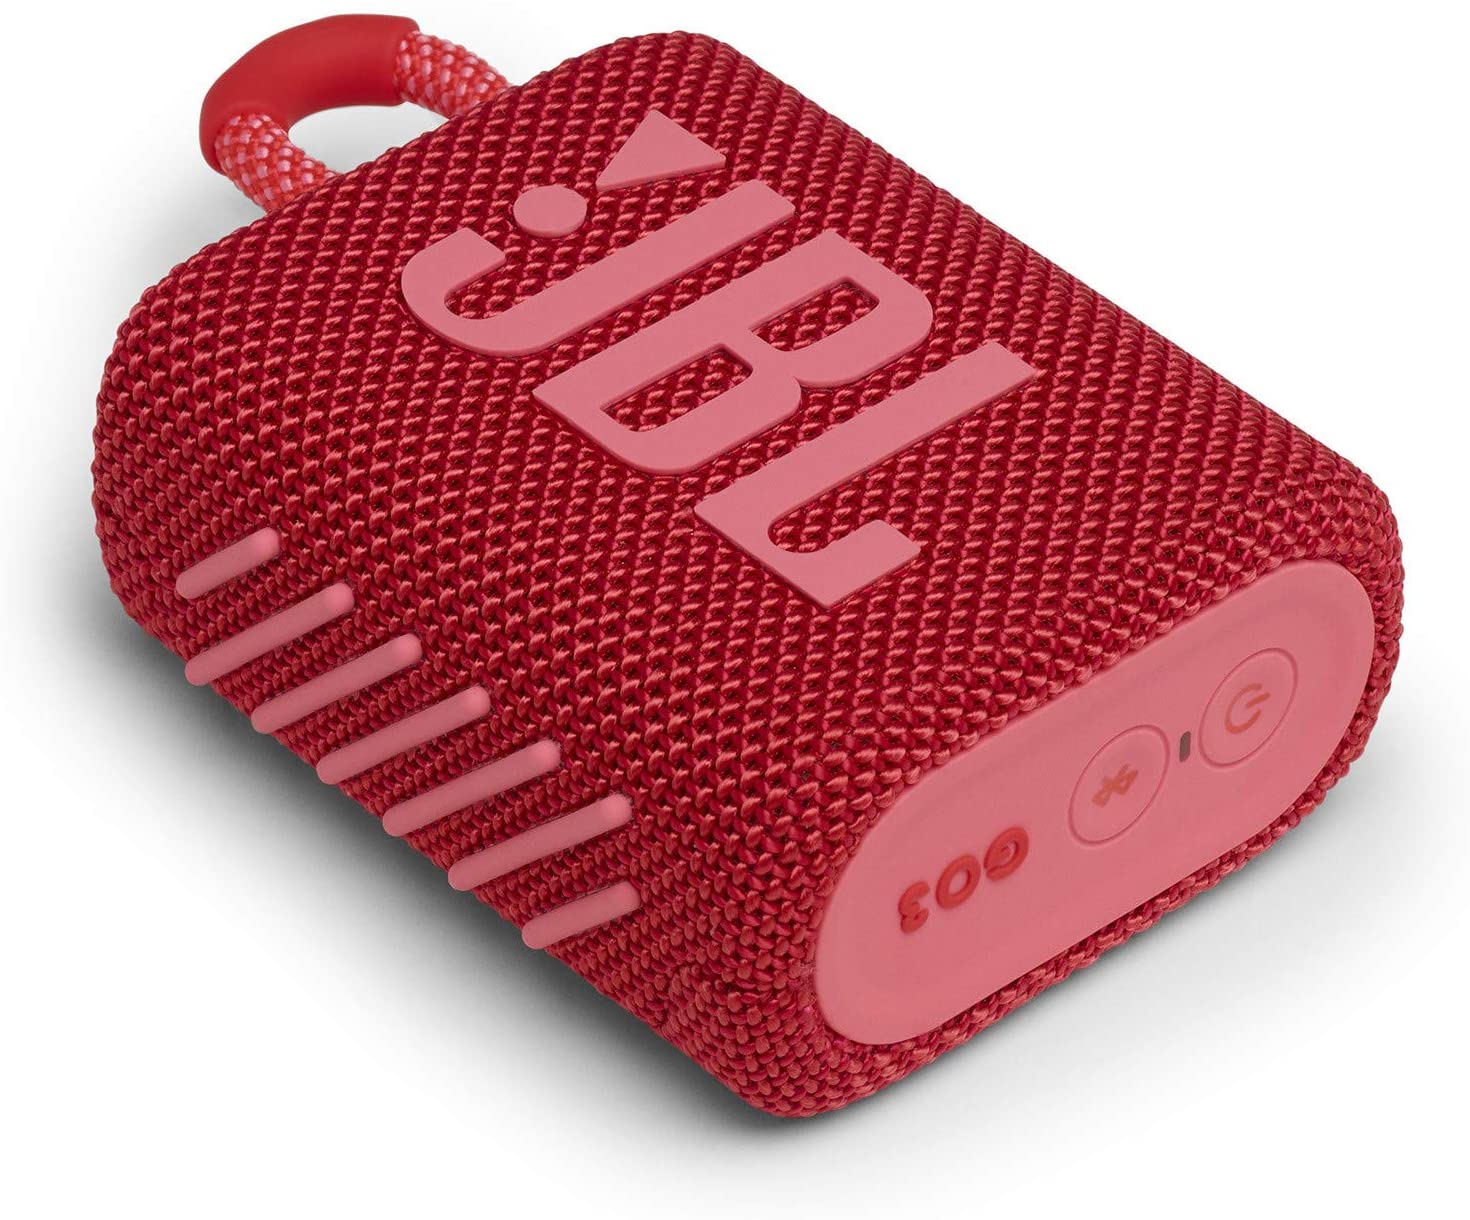 JBL Go 3 Portable Red Waterproof Bluetooth Speaker